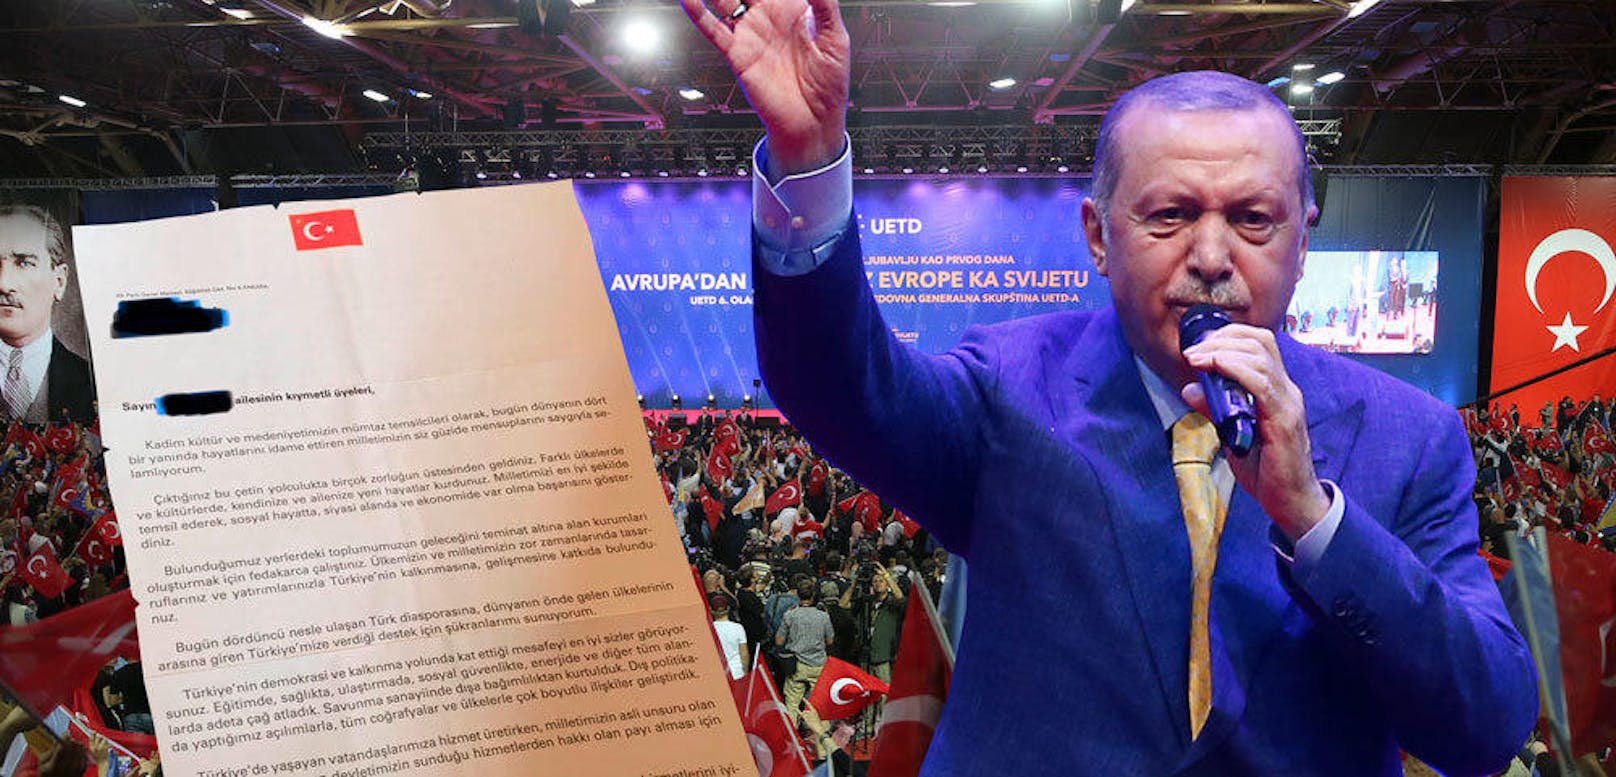 Der türkische Präsident Erdogan befindet sich im Wahl-Kampf.